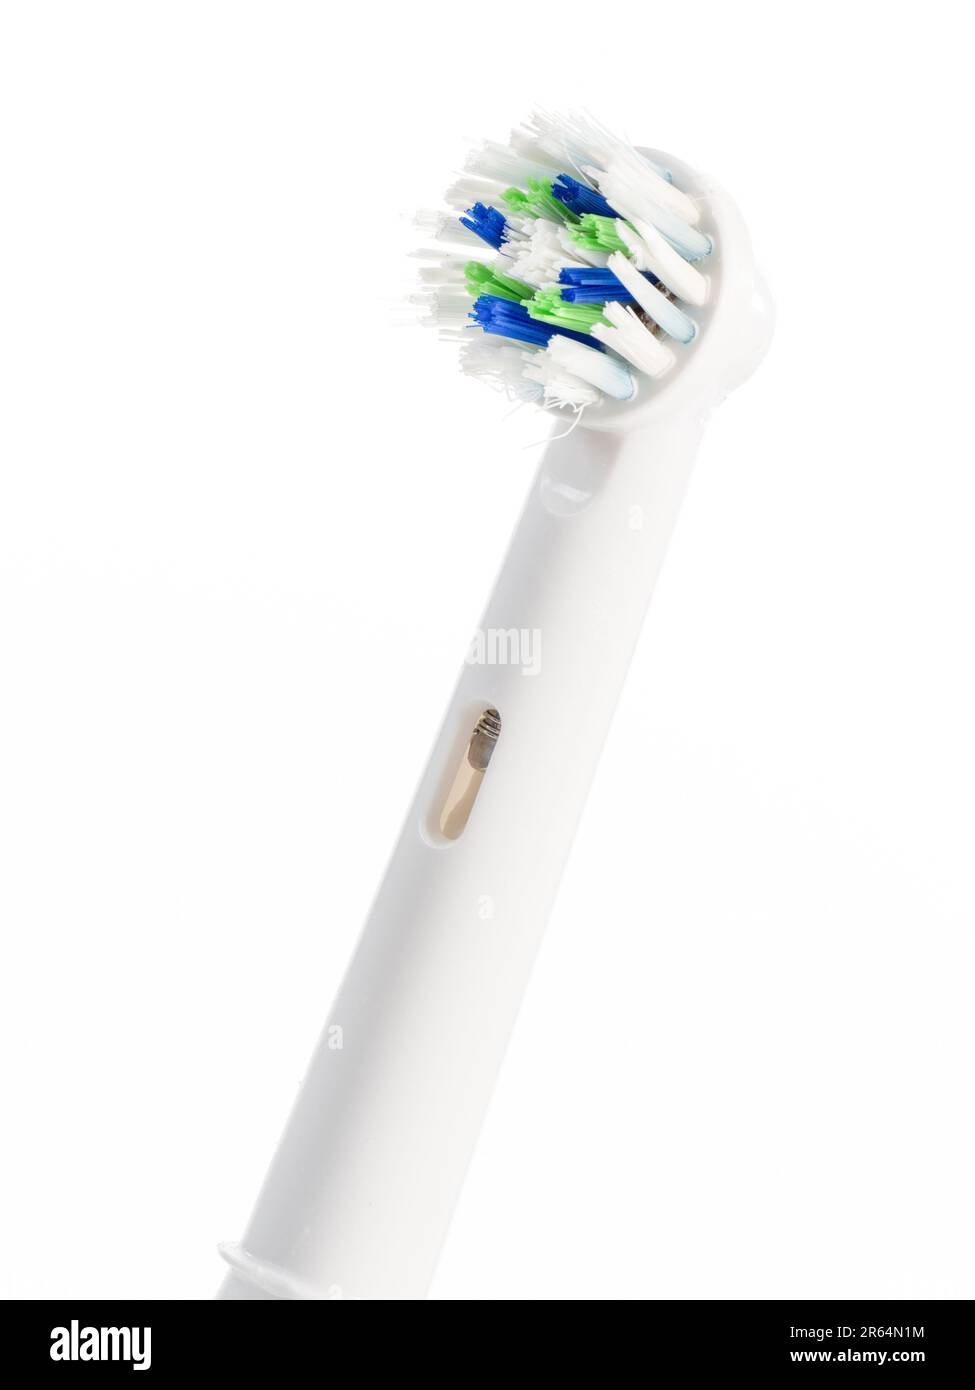 Cierre el cabezal de un cepillo dental eléctrico Foto de stock